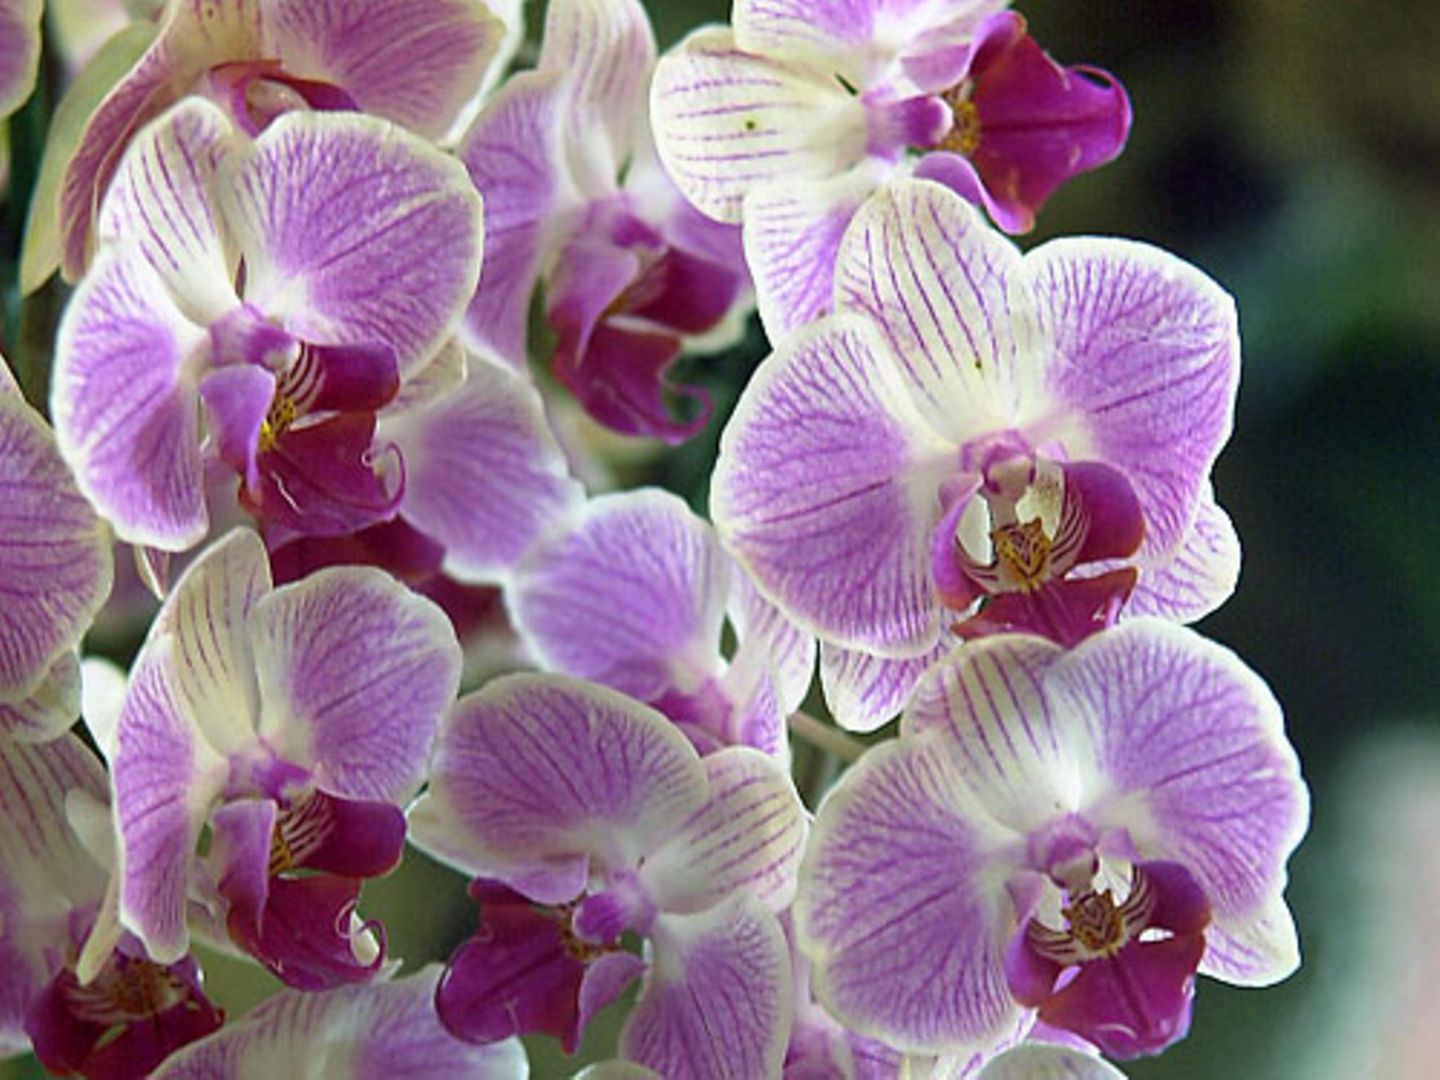 "In der Eifel könnten sich die Orchideen ausbreiten", prognostiziert der Biologe Holger Kreft